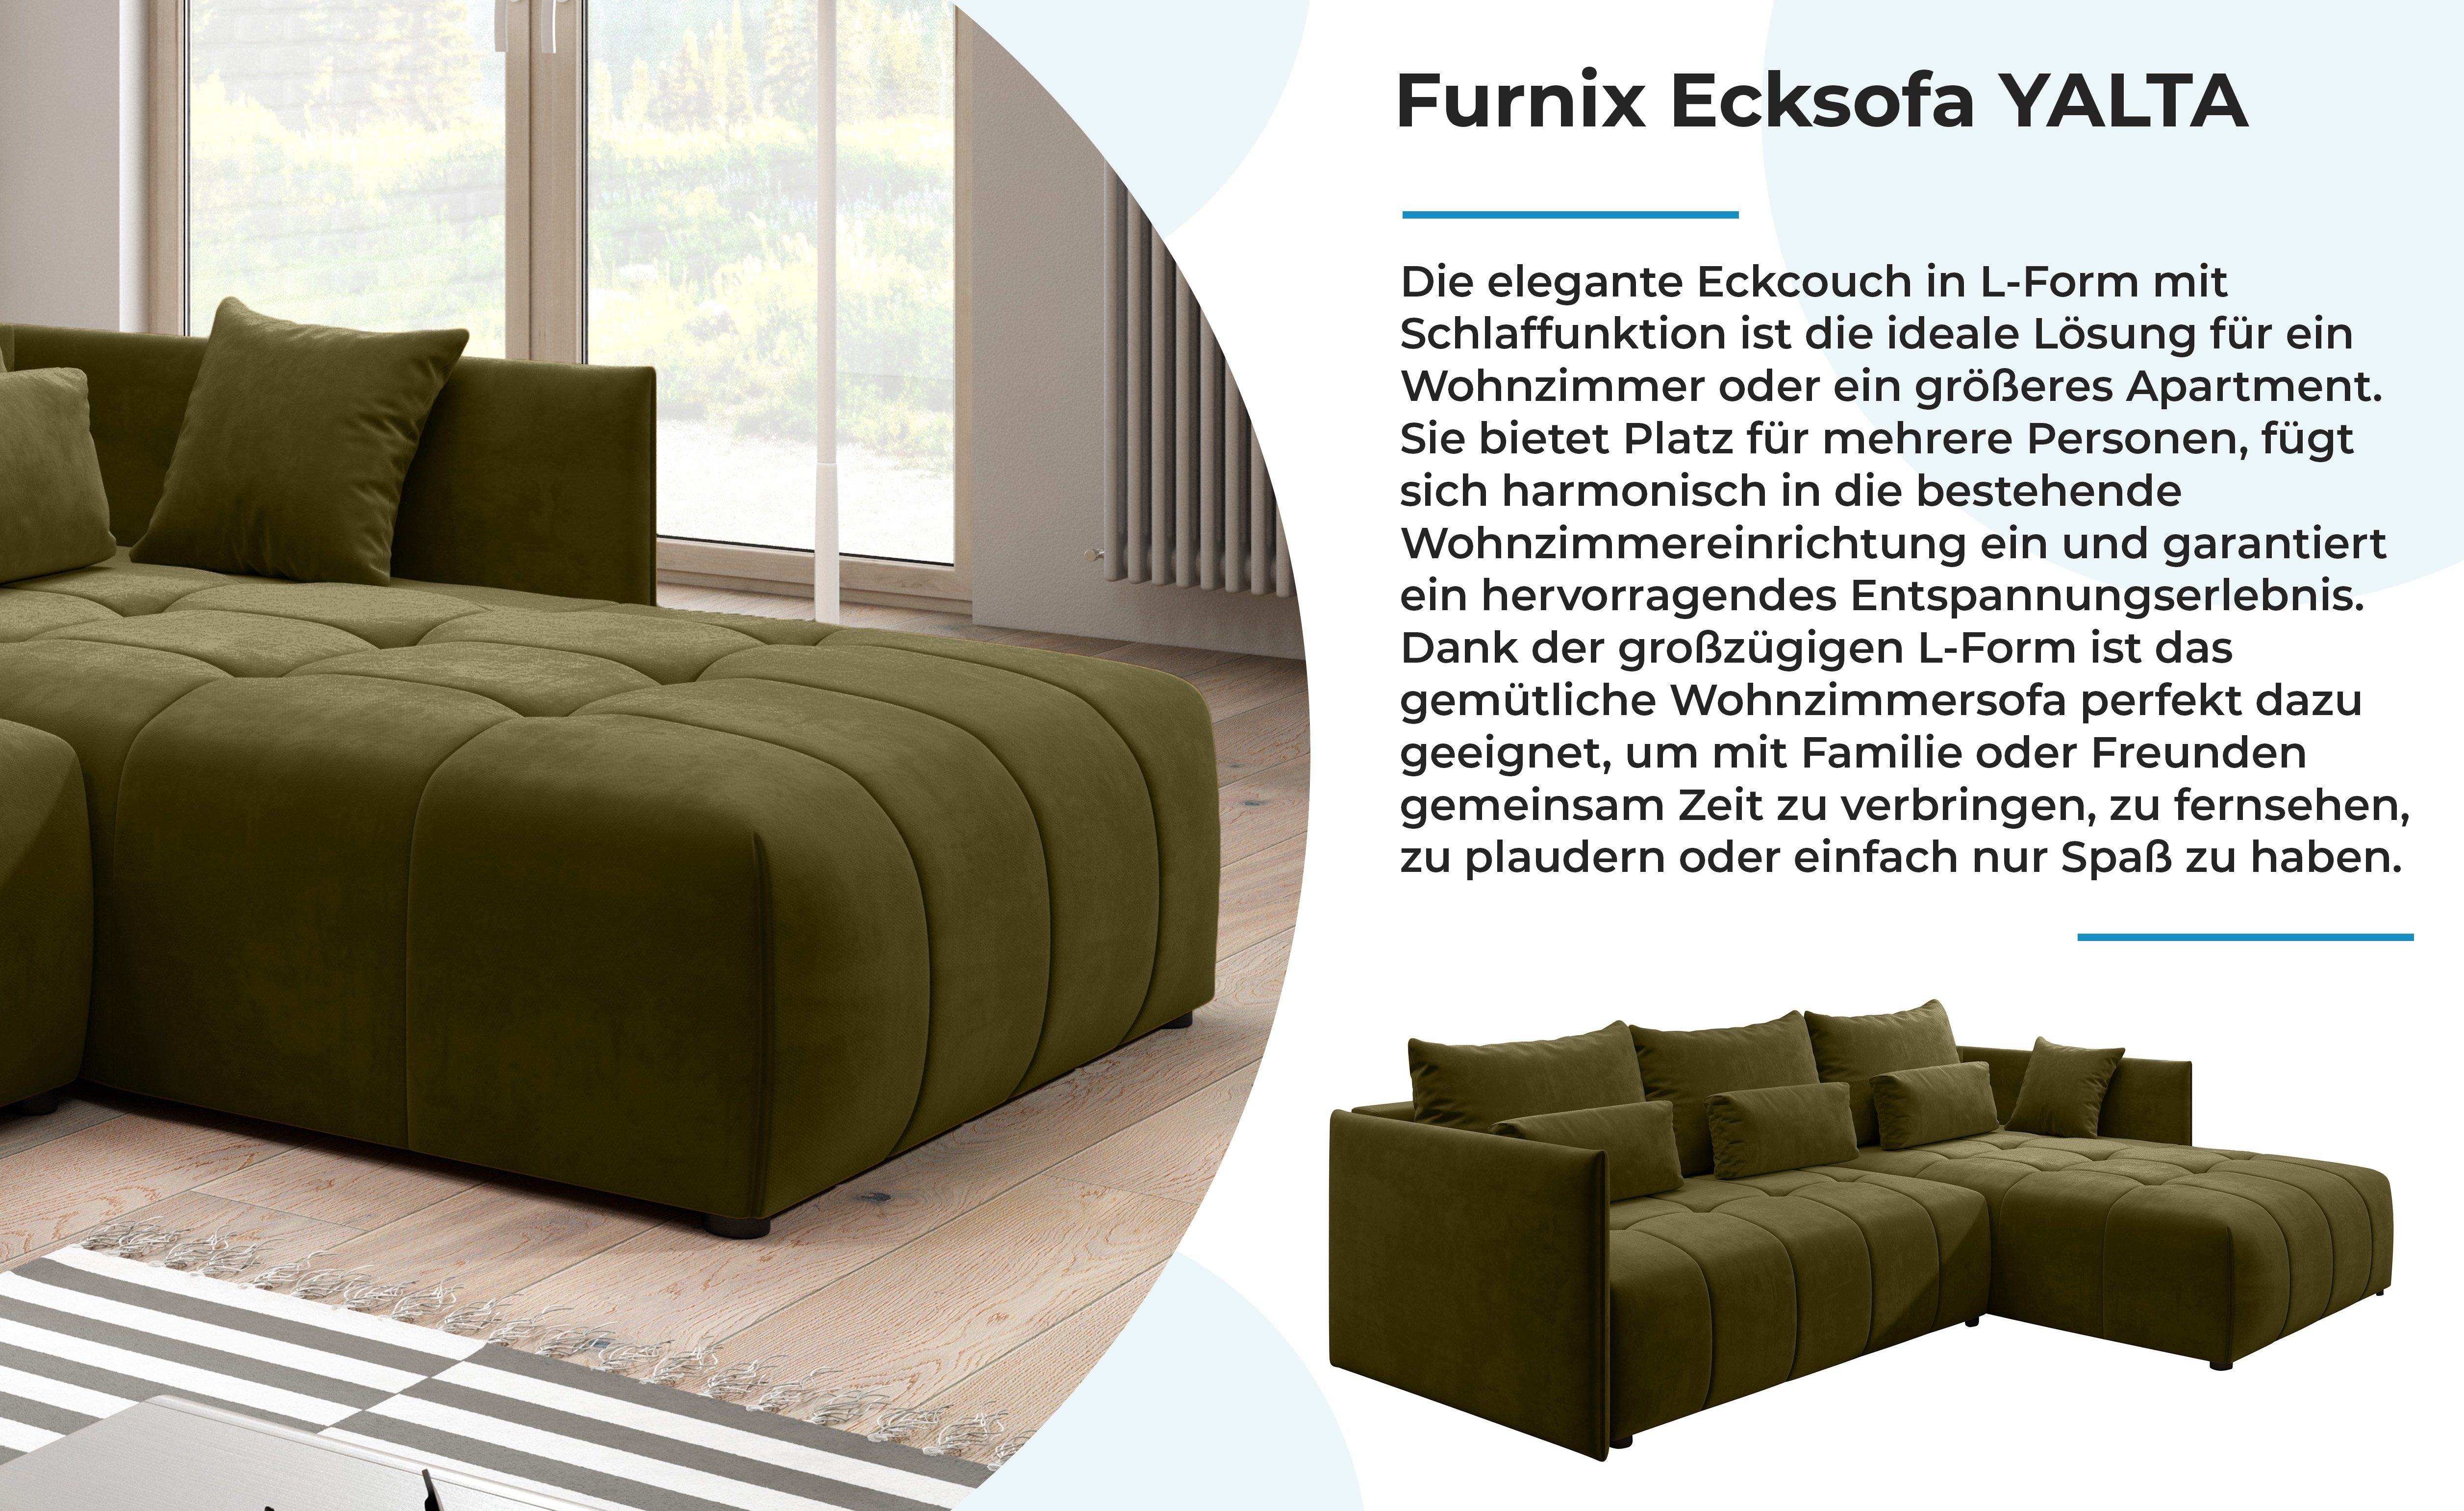 Couch MH38 Europe mit Kissen, Furnix und Made Bettkasten YALTA Schlafsofa in Grün ausziehbar Ecksofa Moos